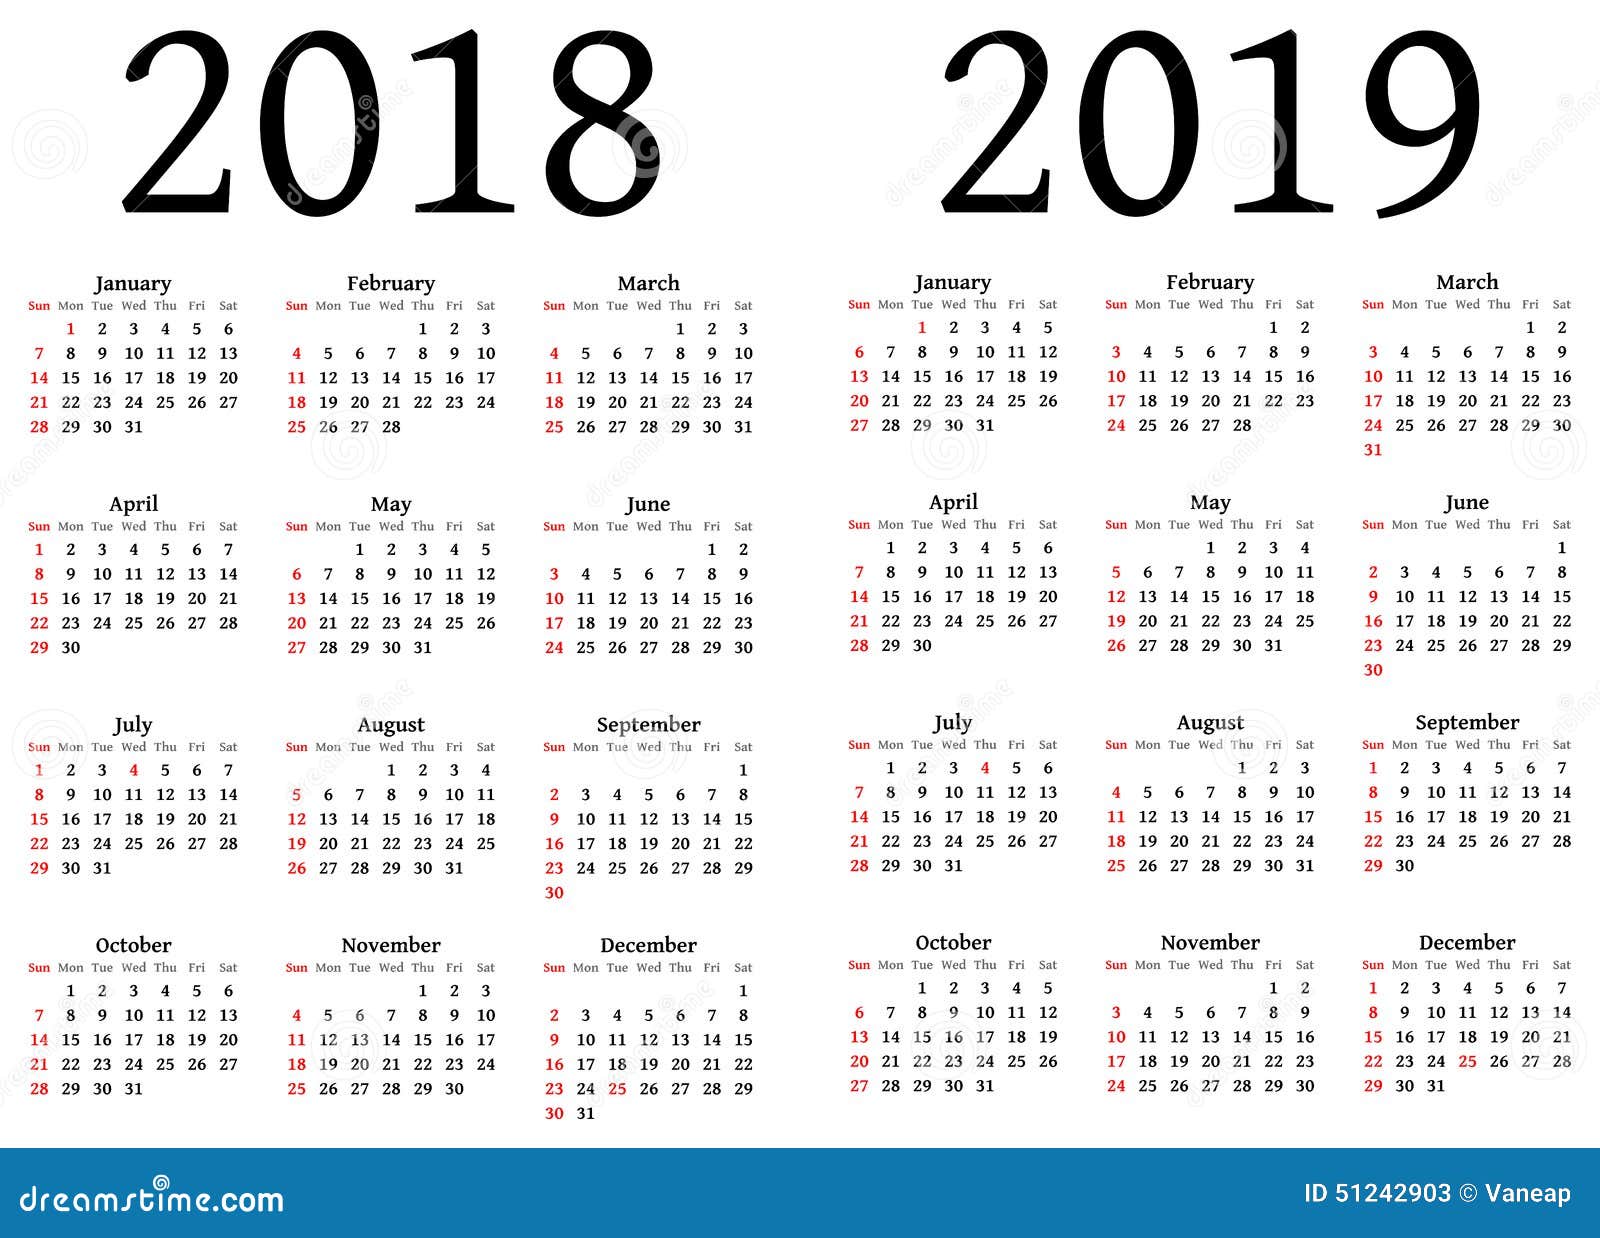 singapore-public-holidays-2018-holidays-tracker